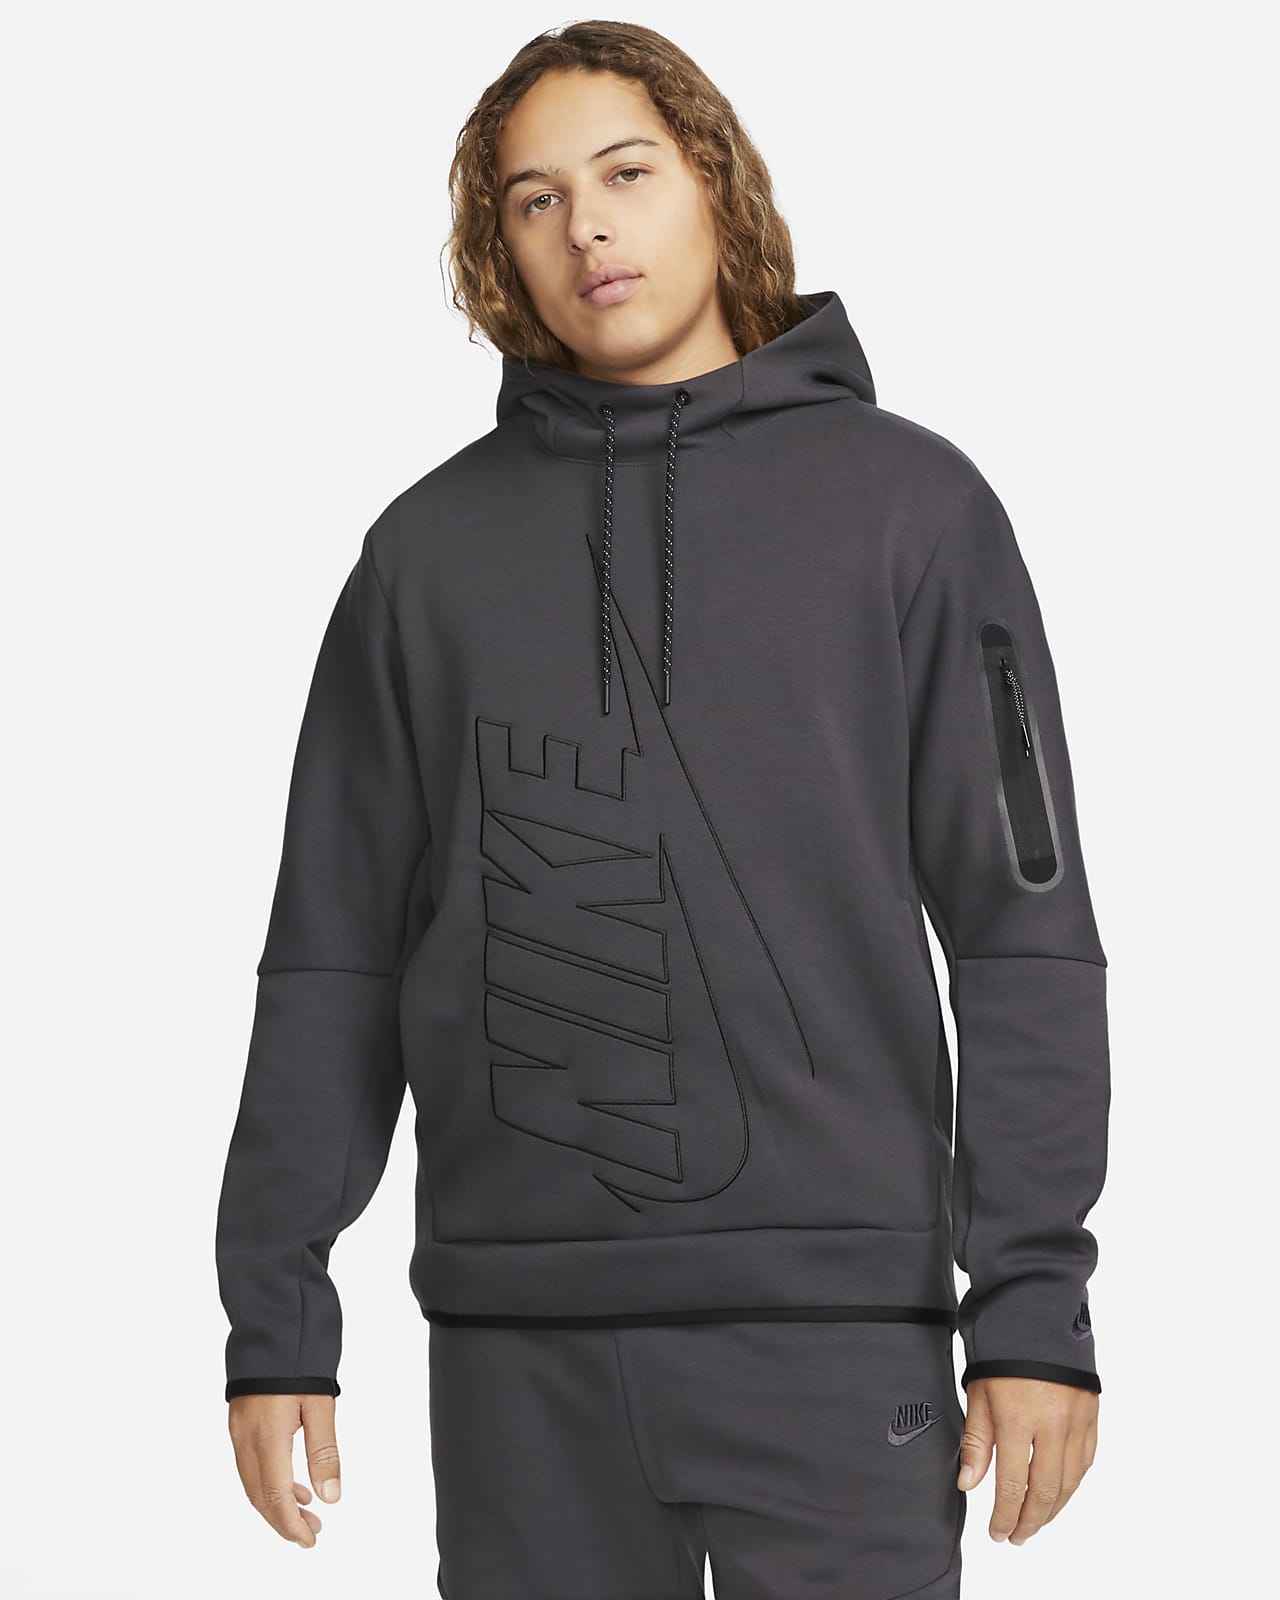 Nike Tech Fleece Men's Pullover Graphic Hoodie